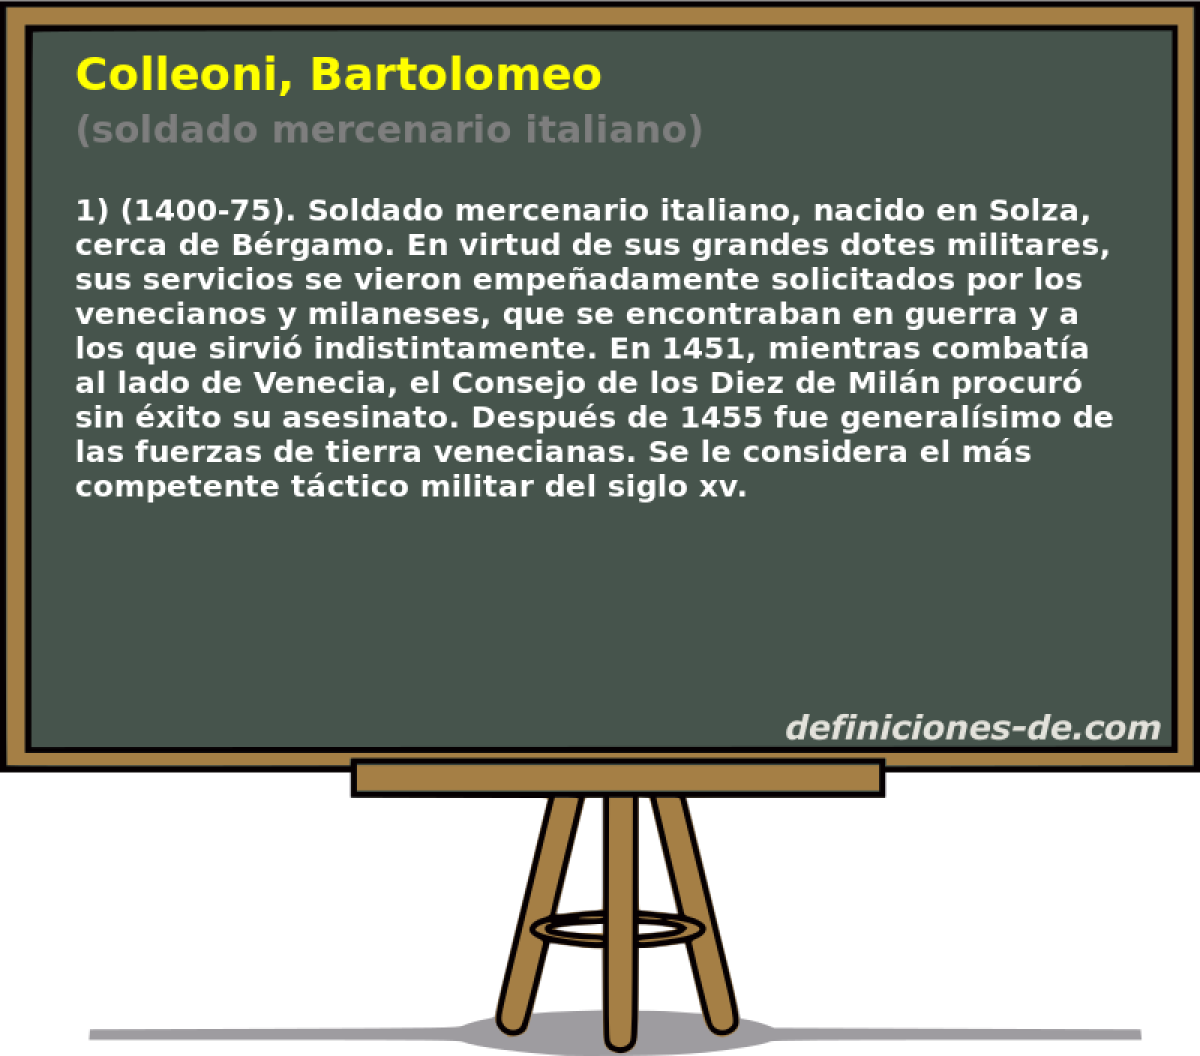 Colleoni, Bartolomeo (soldado mercenario italiano)